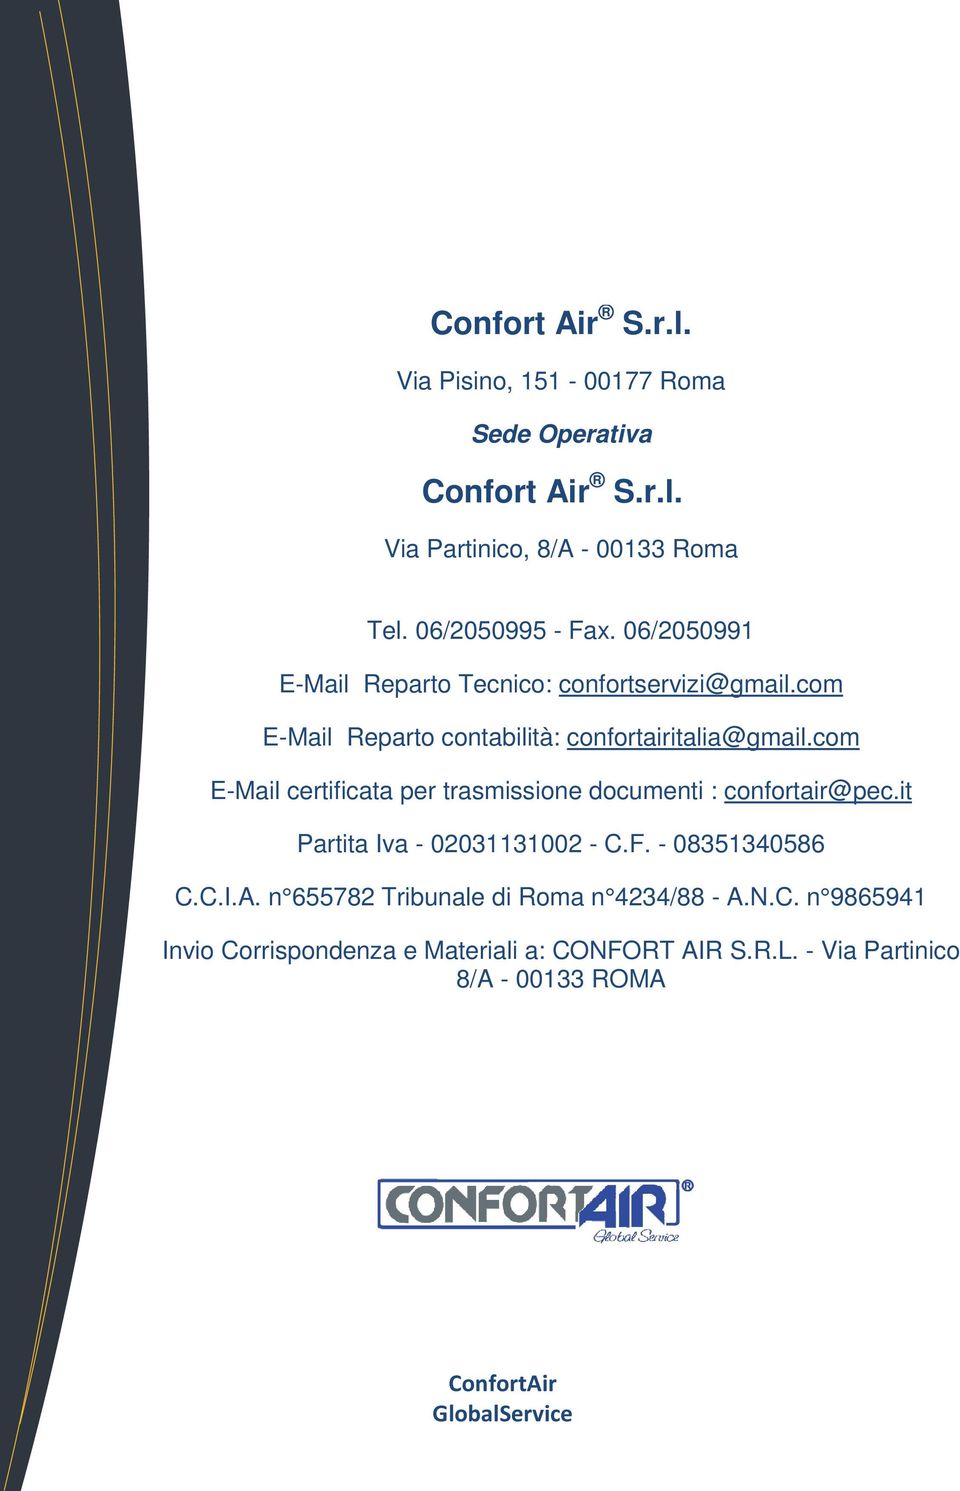 com -Mail eparto contabilità: confortairitalia@gmail.com -Mail certificata per trasmissione documenti : confortair@pec.